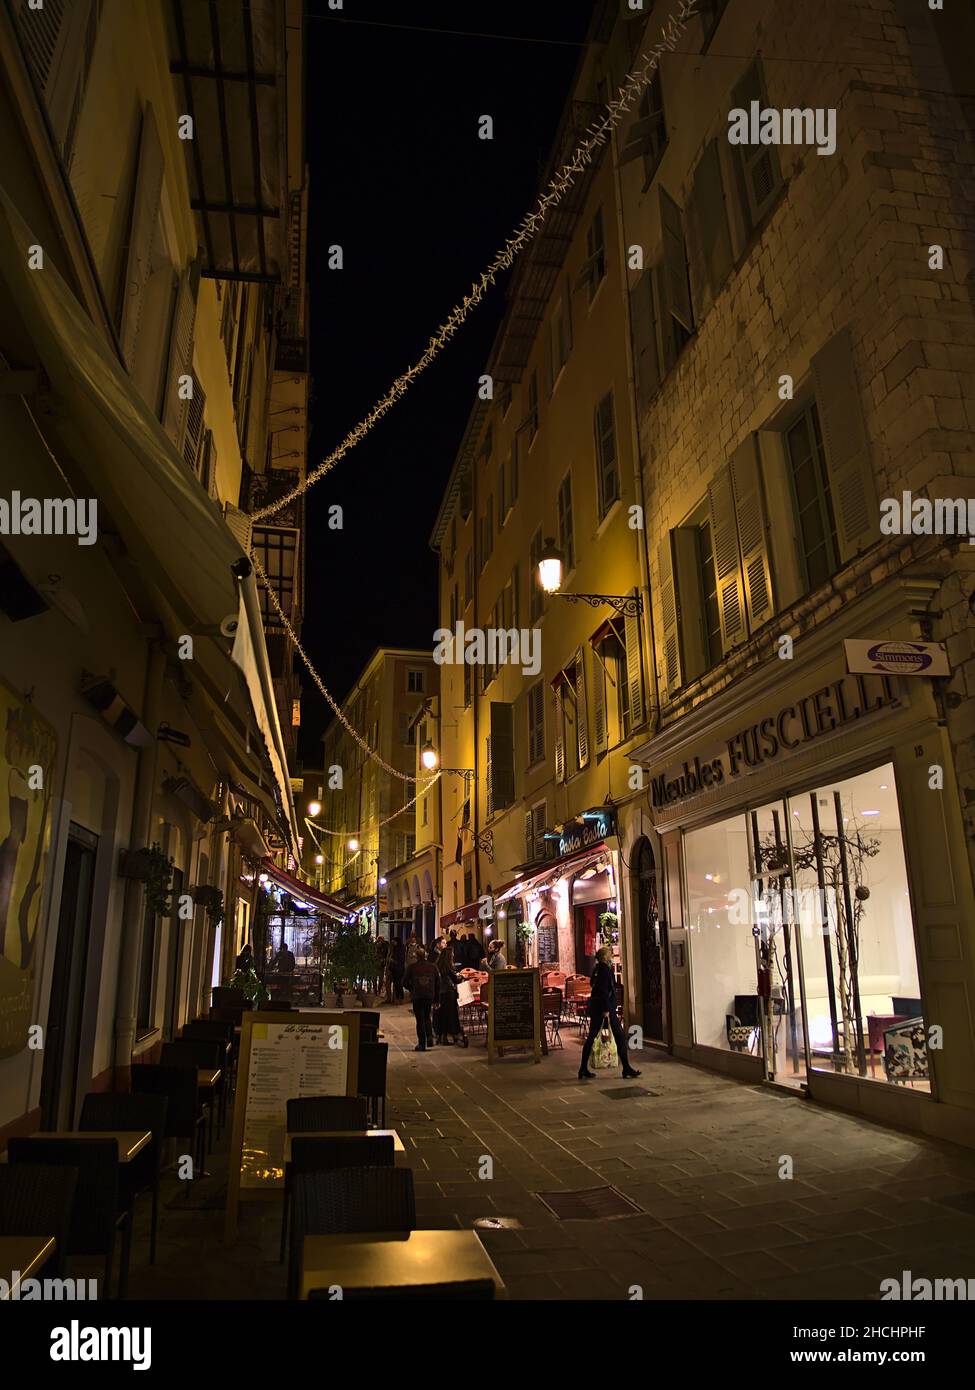 Animada escena nocturna en el centro de Niza, Francia en la Riviera Francesa con gente caminando a través de un callejón iluminado, restaurantes y tiendas. Foto de stock